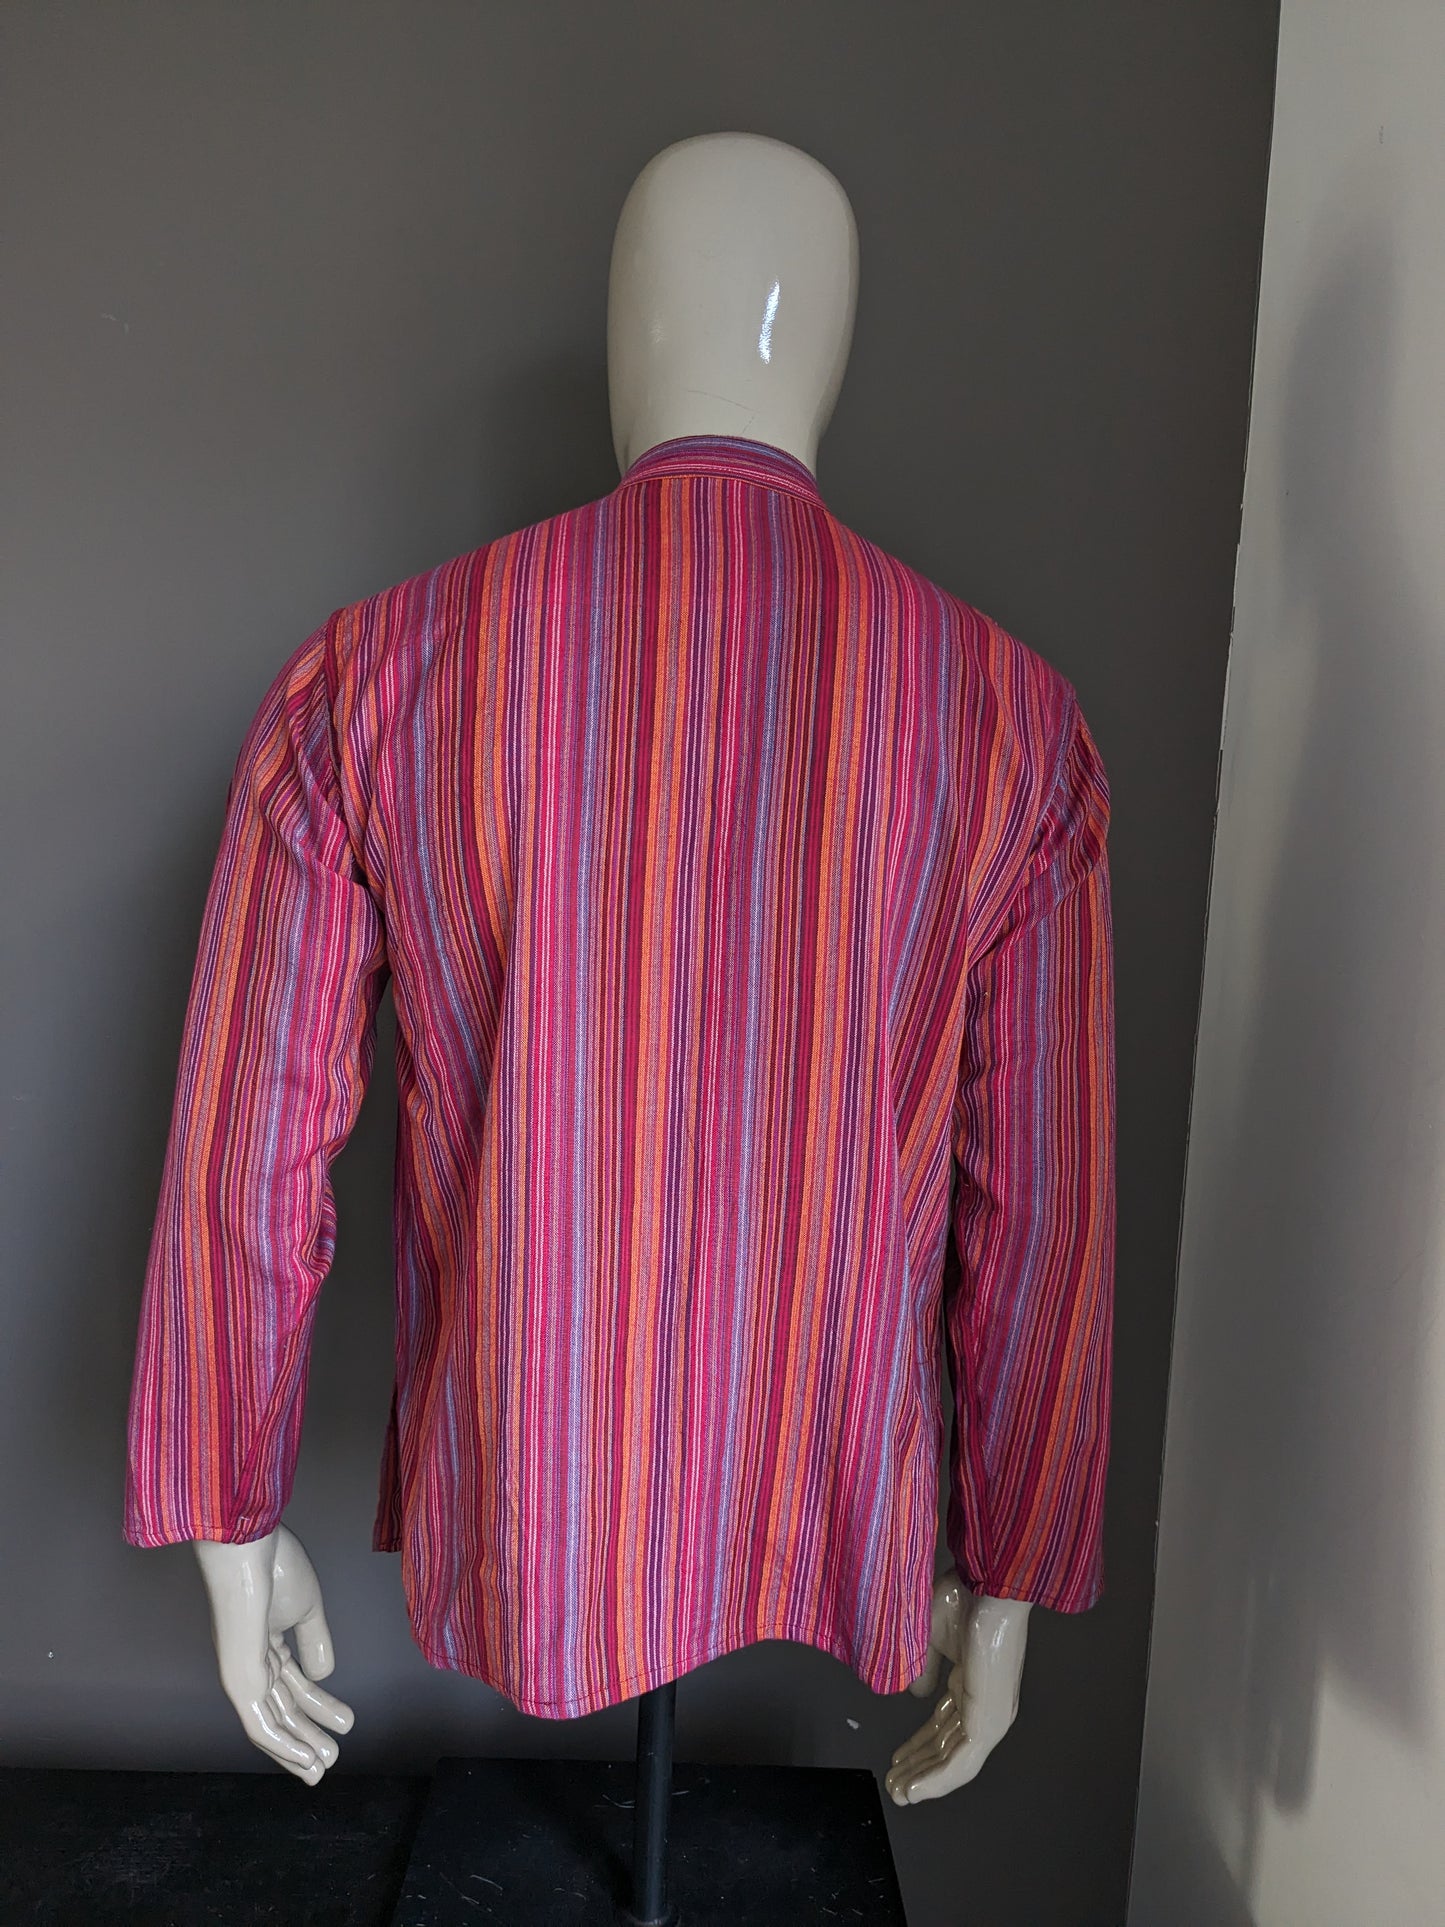 Vintage Modas Bagdad Polotrui / Hemd mit Mao / Steh- / Bauernkragen. Rot / farbig gestreift. Größe L.